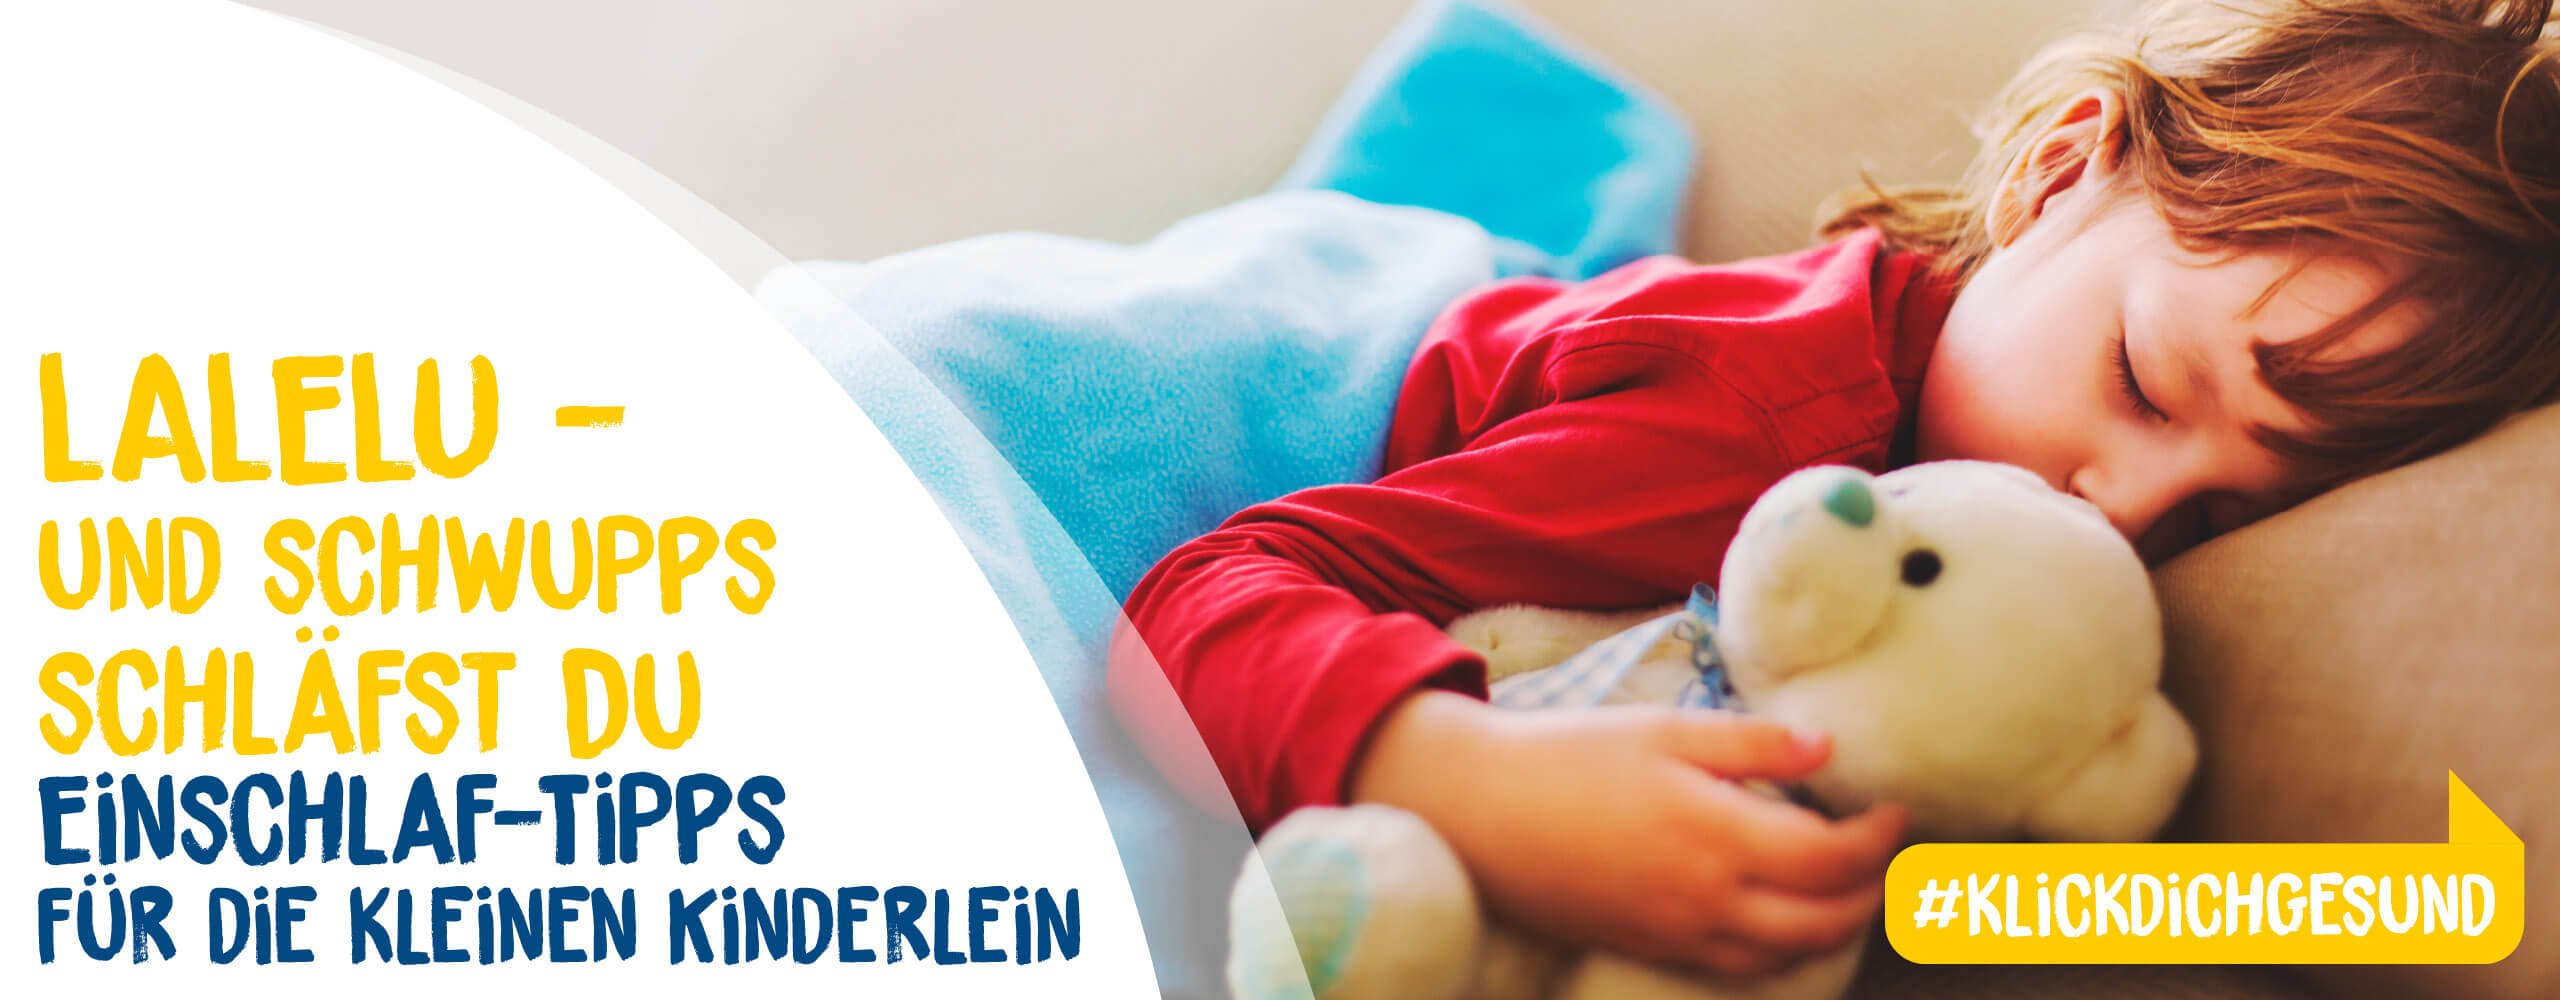 LALELU - und schwupps schläfst Du - Einschlaf-Tipps für die kleinen Kinderlein #GesundAtHome - Header